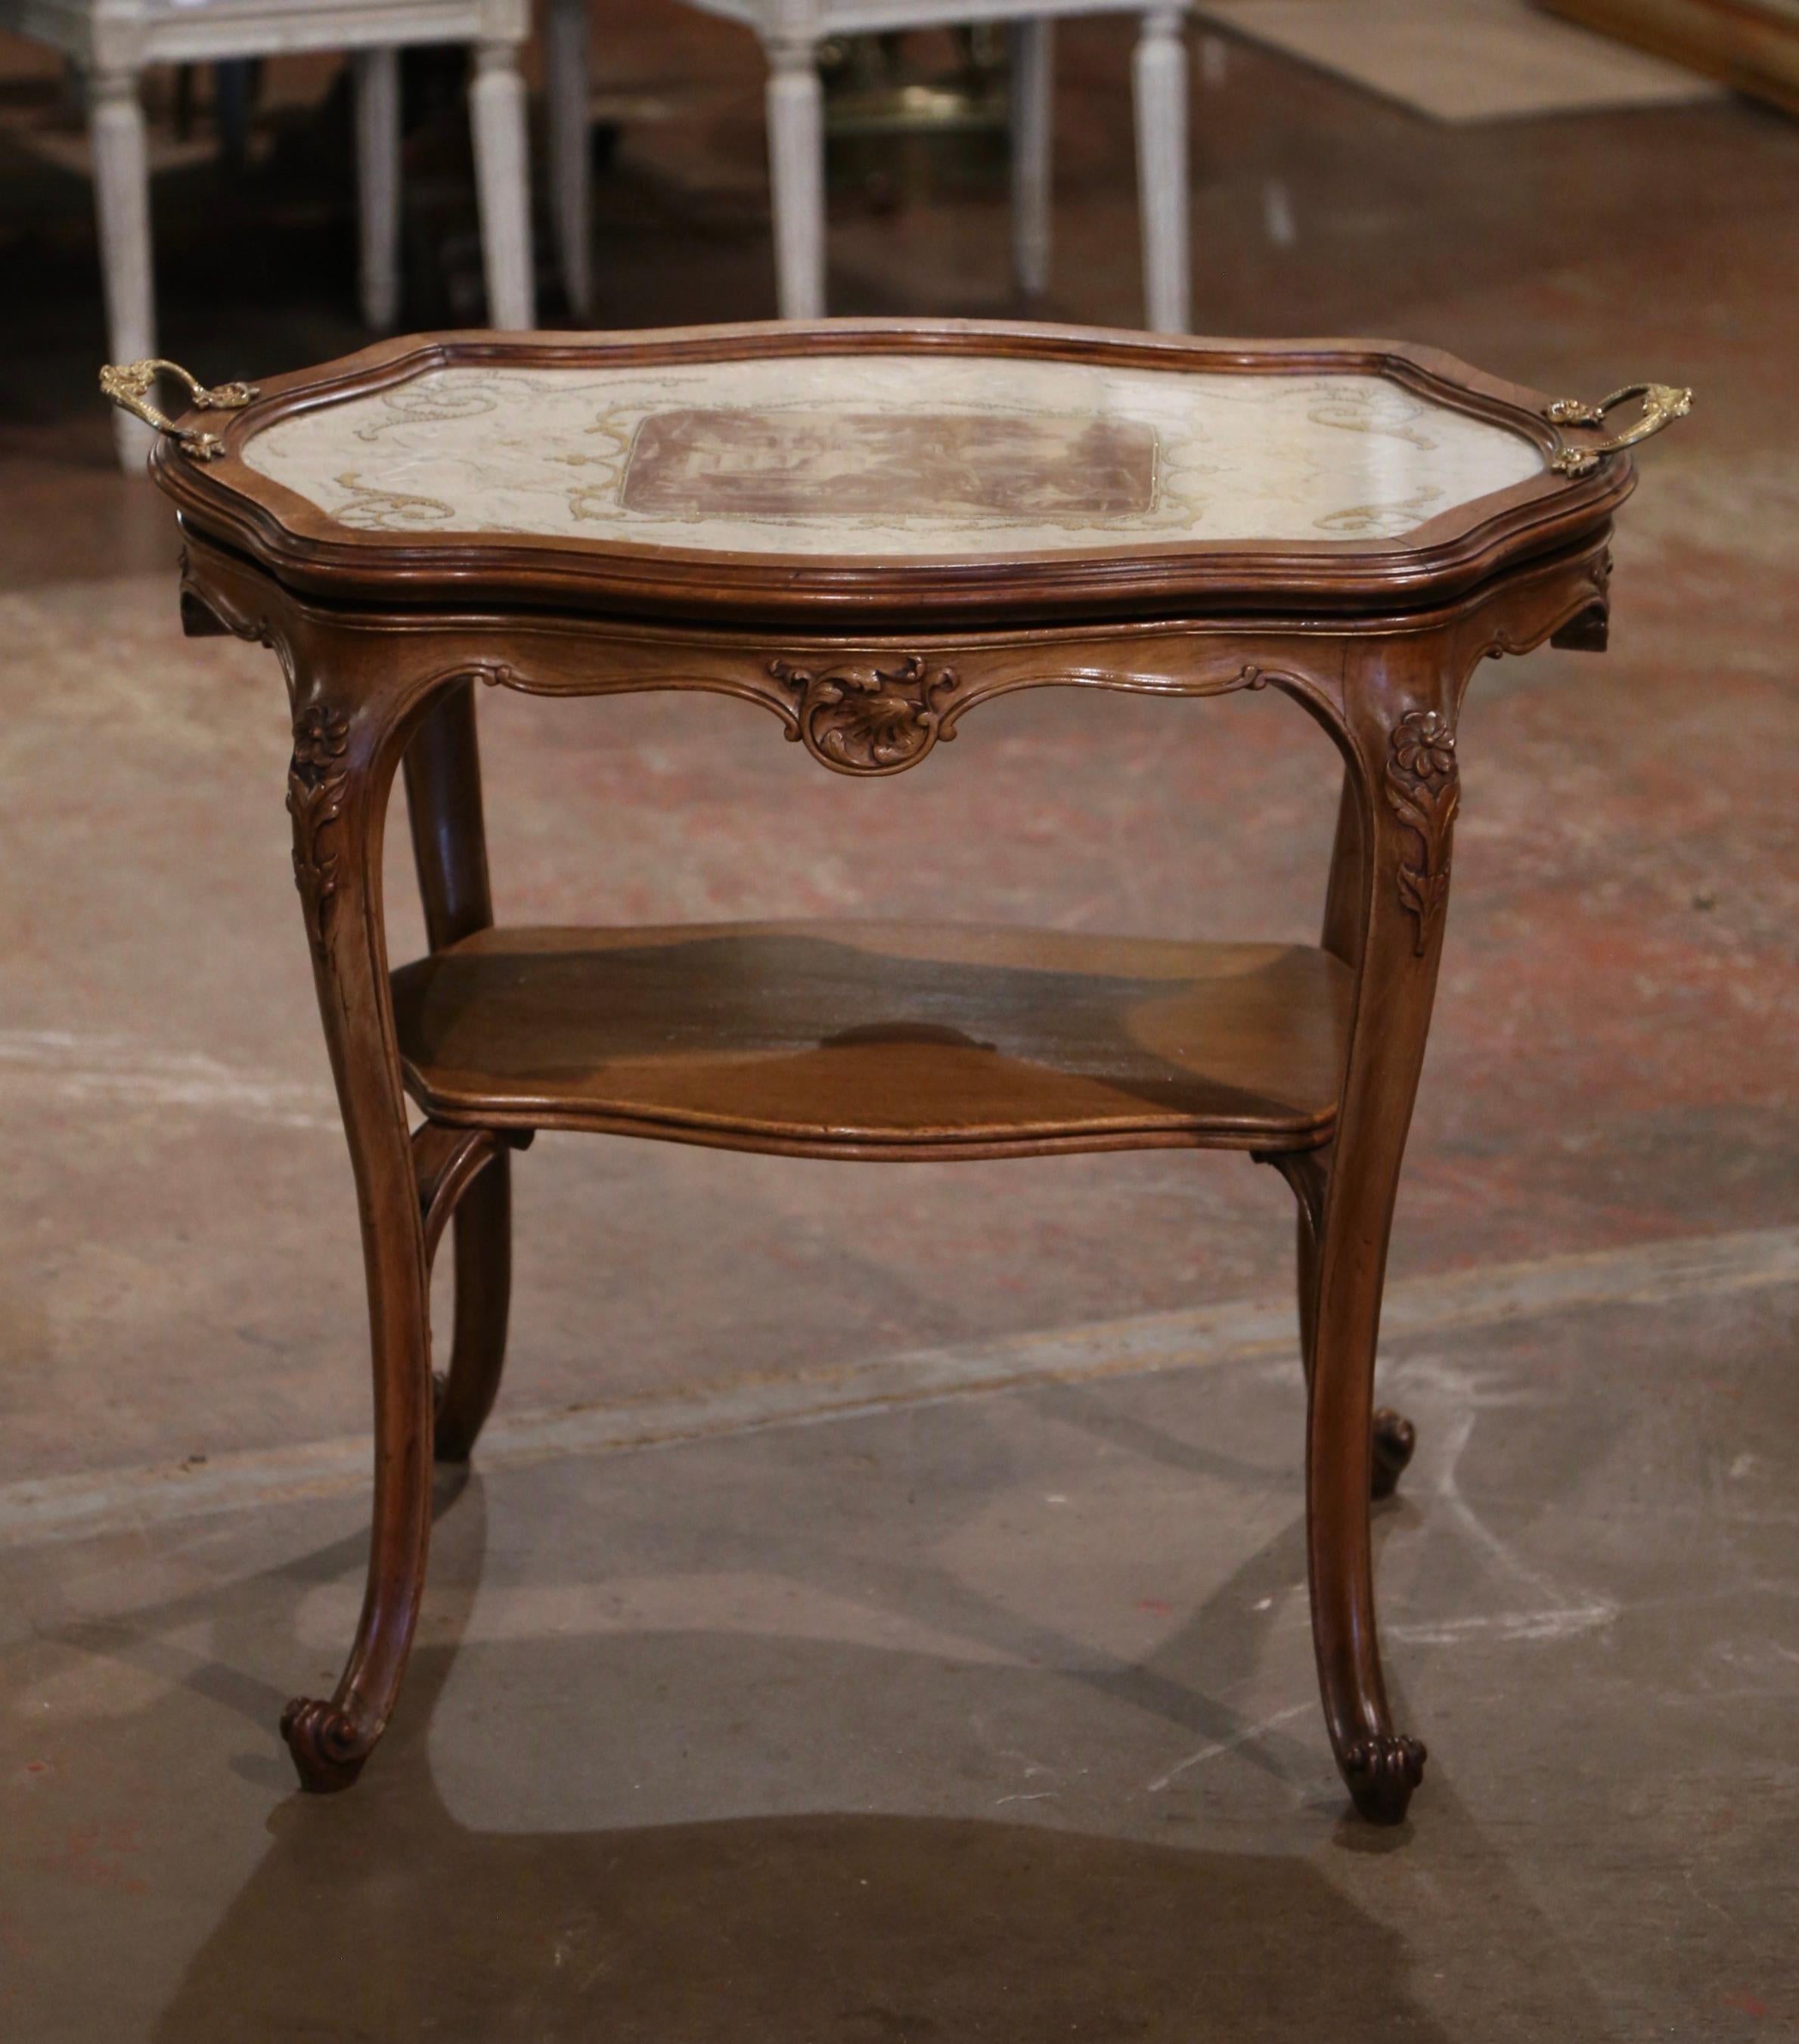 Dieser elegante Servicetisch eignet sich für das Esszimmer, um Tee oder Dessert zu servieren. Der um 1920 in der französischen Provence gefertigte Tisch steht auf Cabriole-Beinen, die an den Schultern mit Akanthusblattmotiven verziert sind und mit